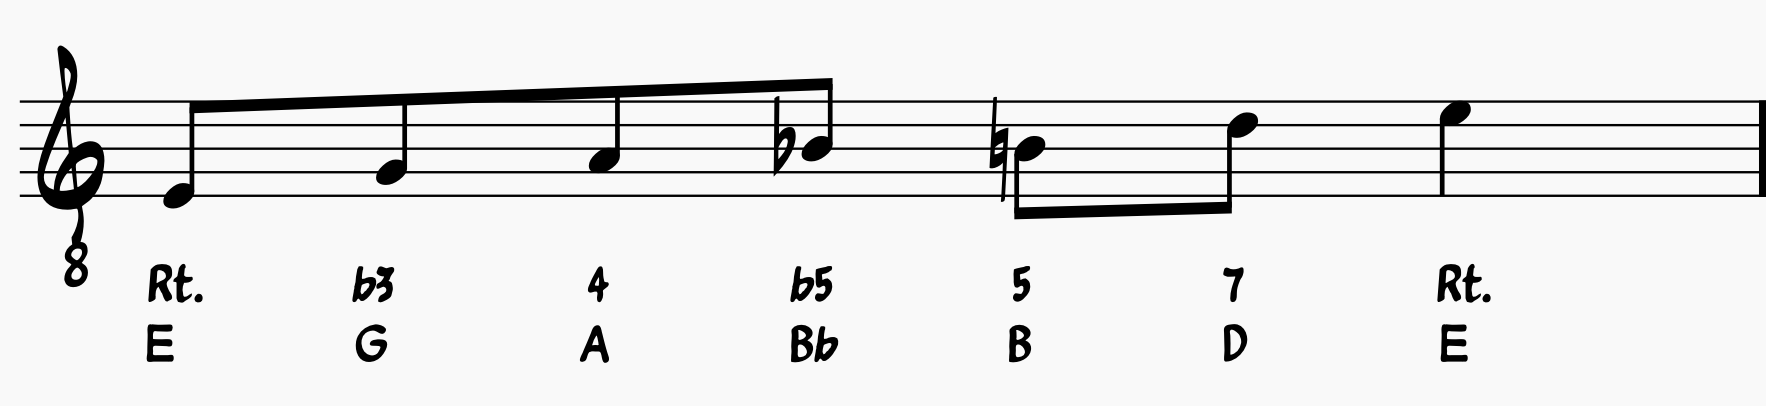 Blues Scale Guide: E minor blues scale